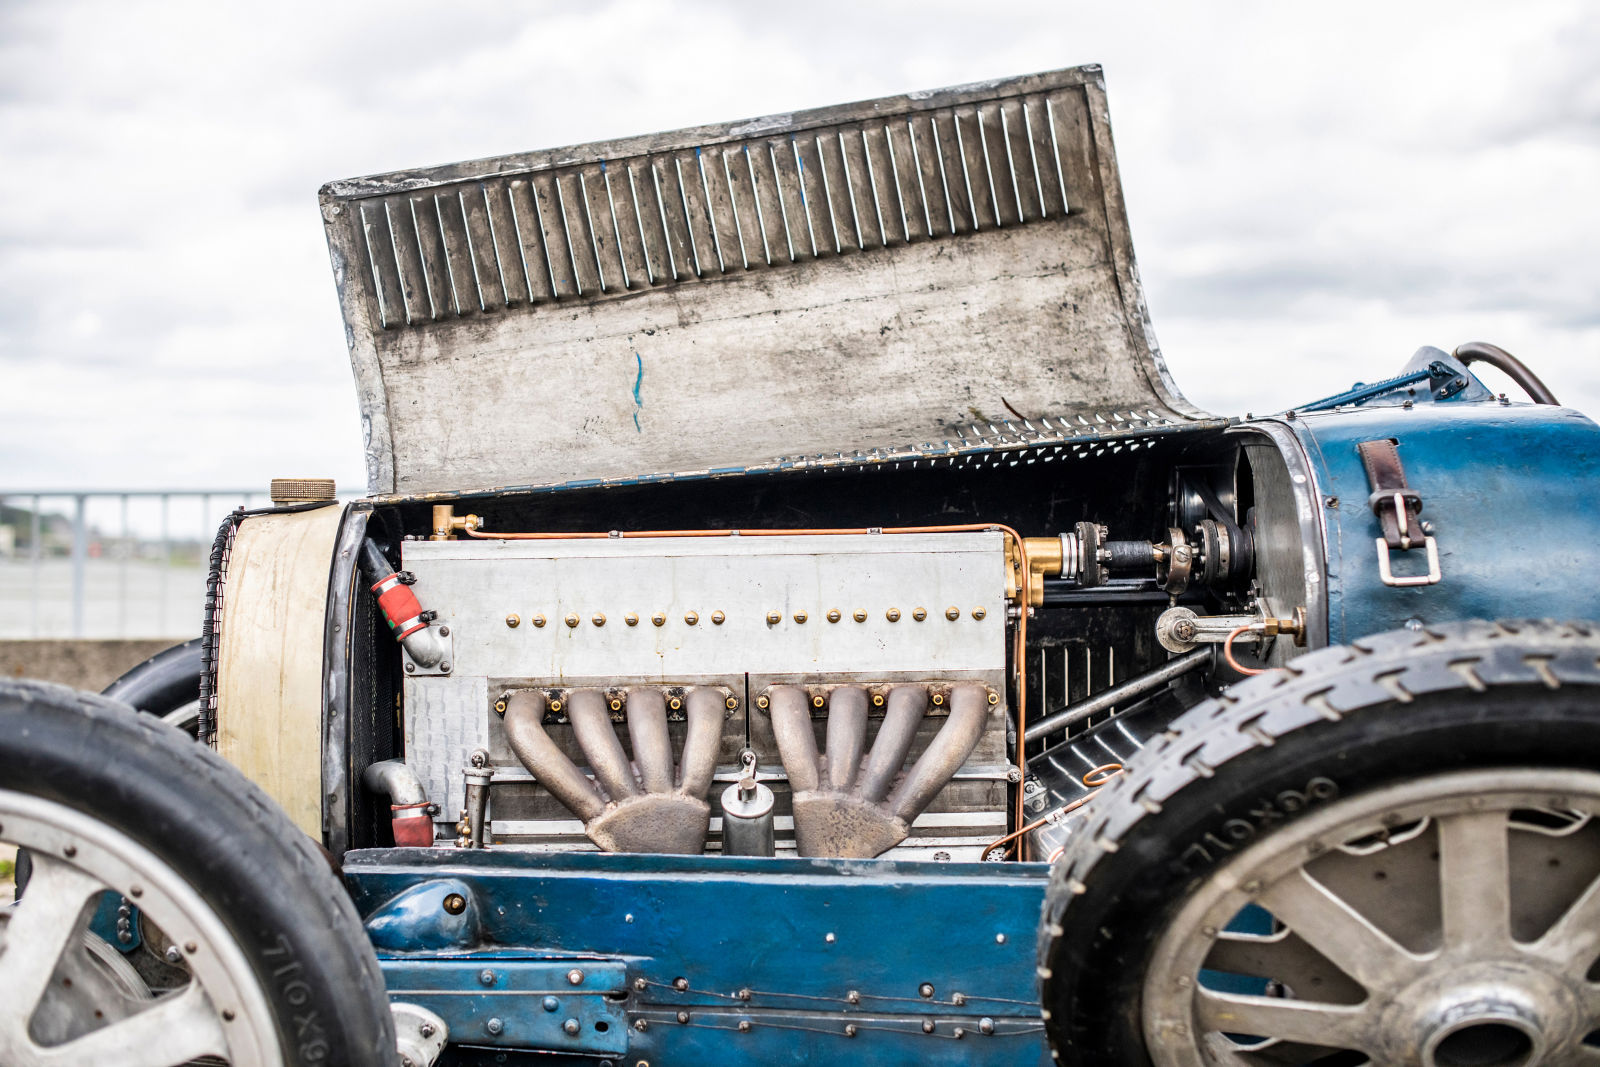 Cận cảnh mẫu xe Bugatti thành công nhất mọi thời đại